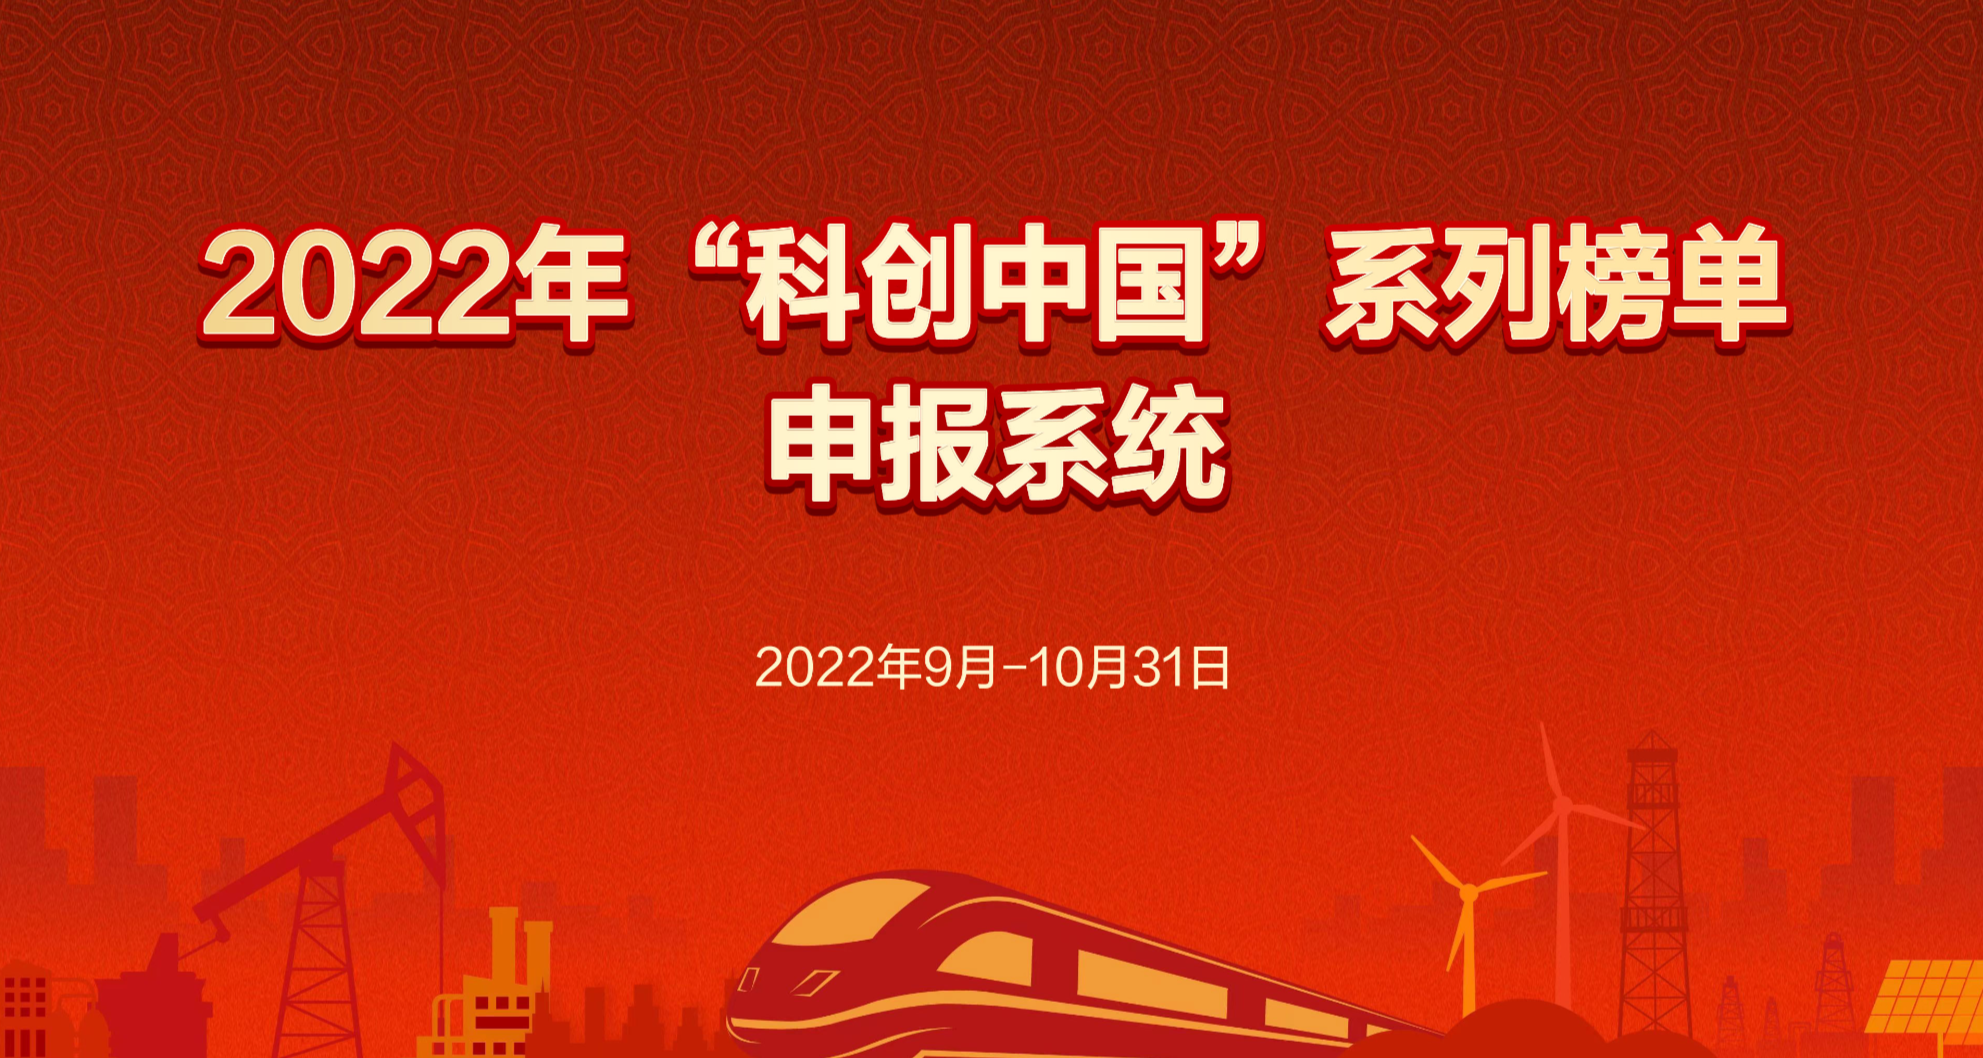 2022年“科创中国”系列榜单 申报系统